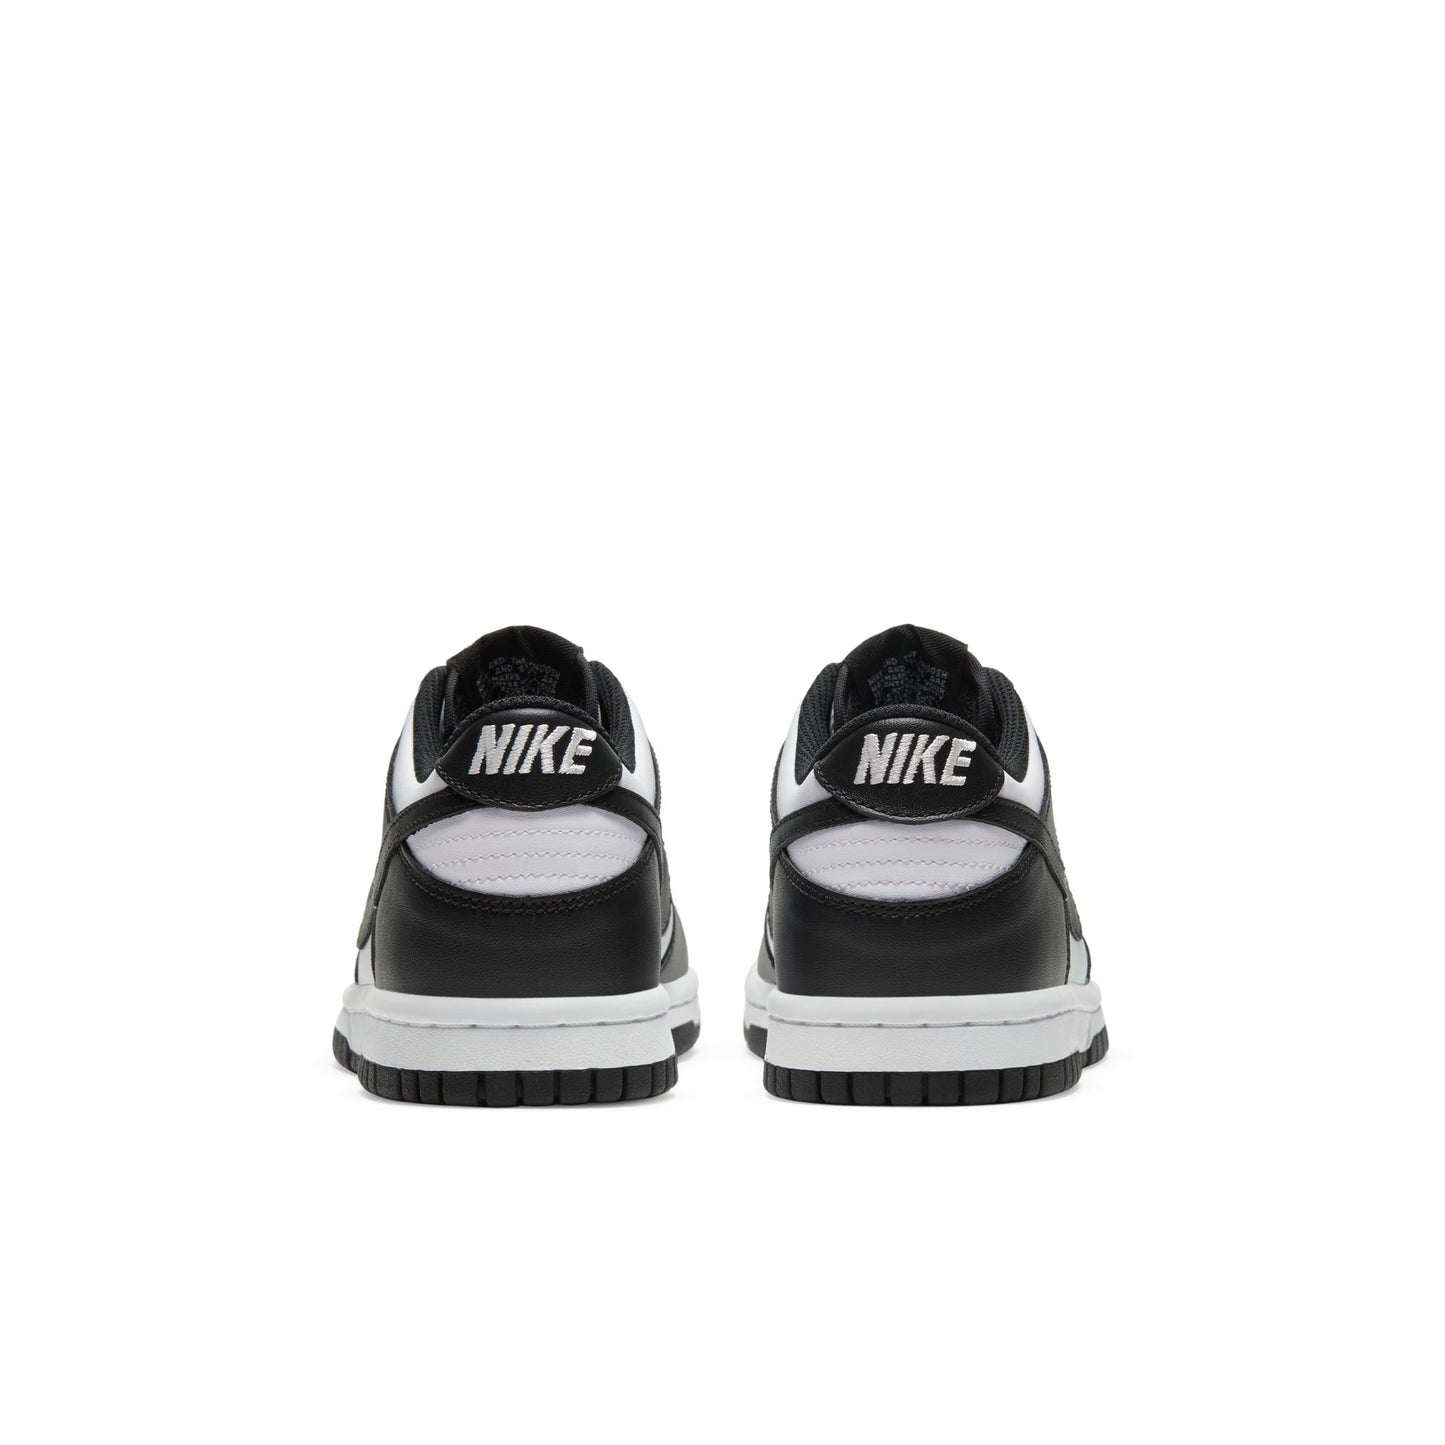 Nike Dunk Low GS "Panda" - CW1590-100